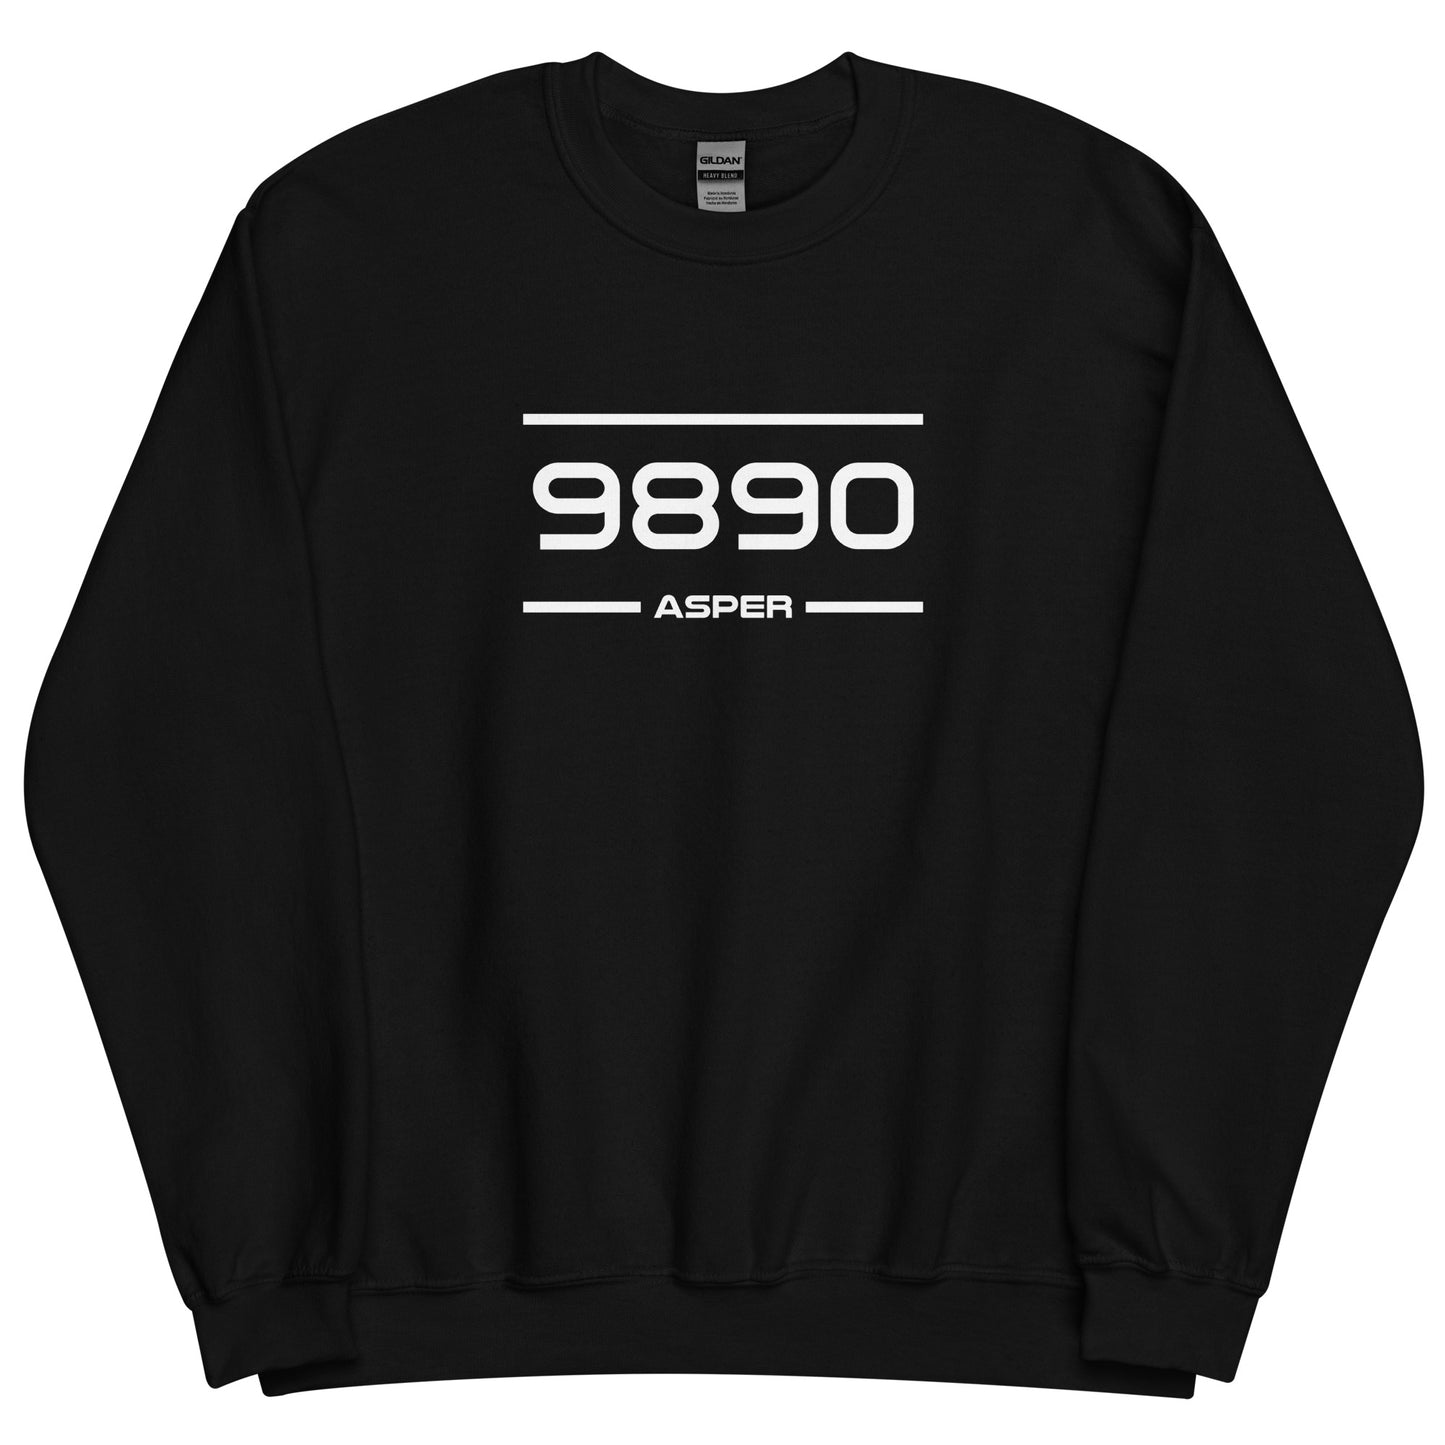 Sweater - 9890 - Asper (M/V)